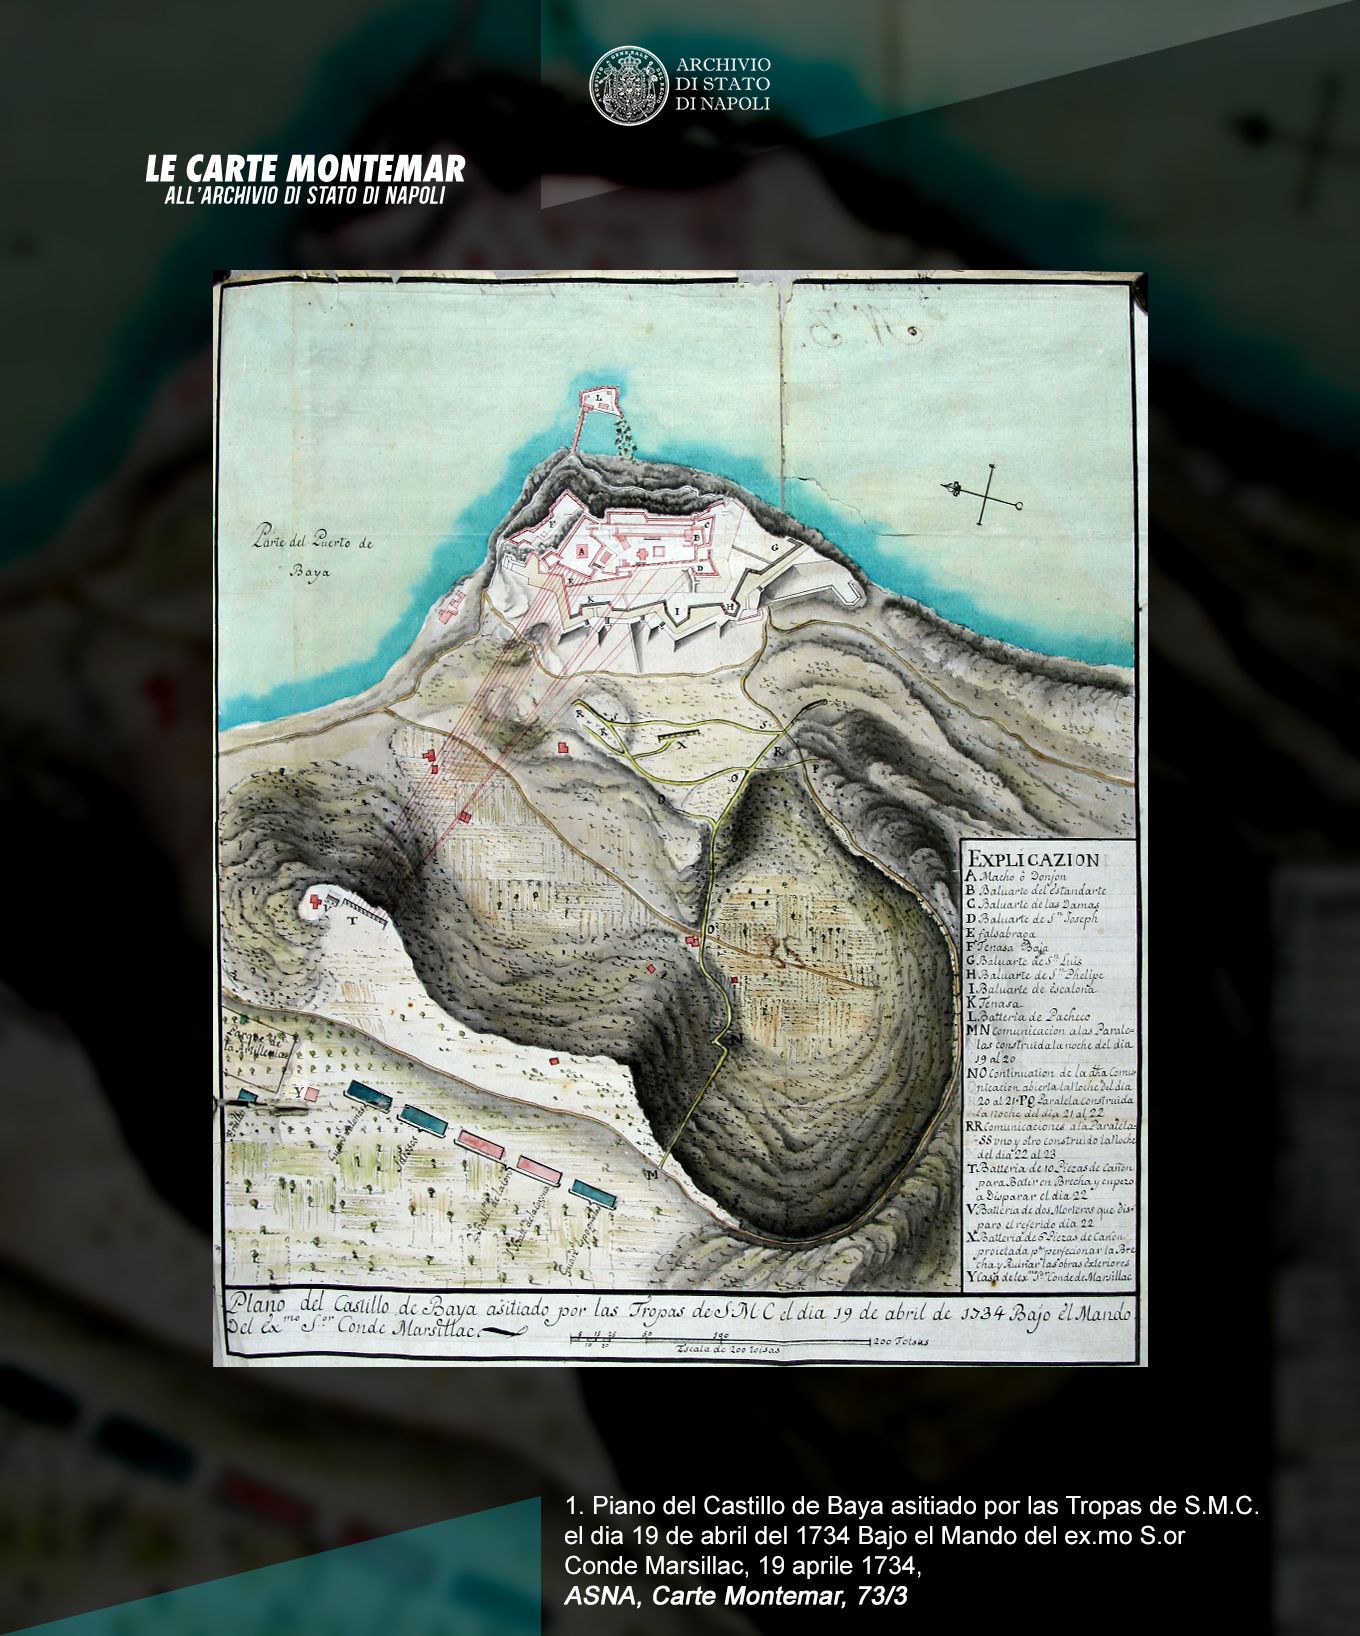 Mostra virtuale: Le Carte Montemar all’Archivio di Stato di Napoli